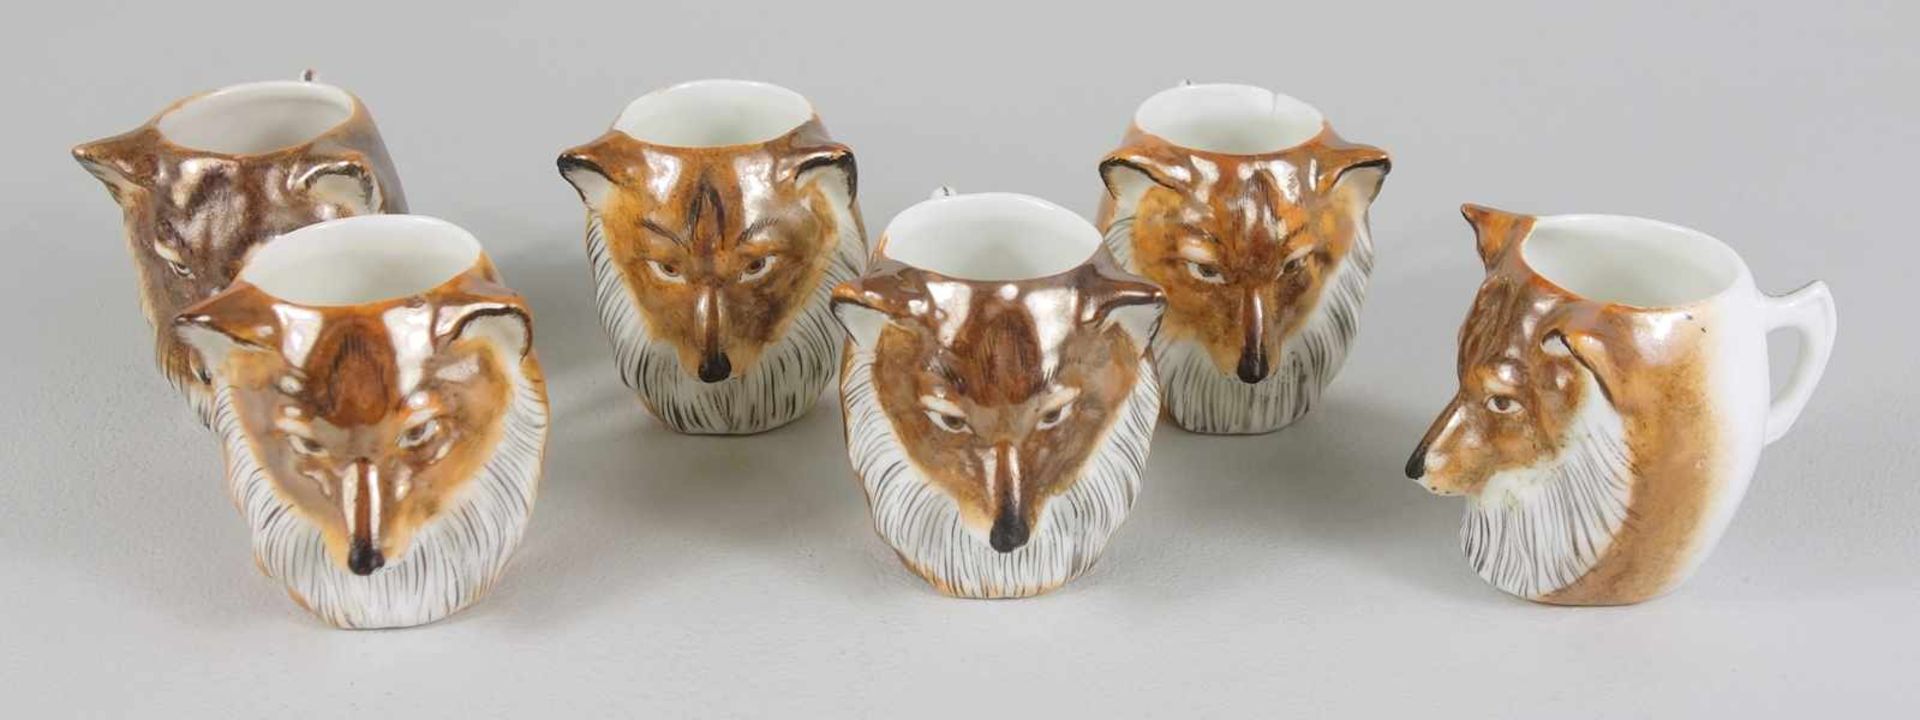 6 Schnapsbecher "Fuchs", Anfang 20.Jh., kleine Tasse in Form eines Fuchskopfes, H.4cm (1*